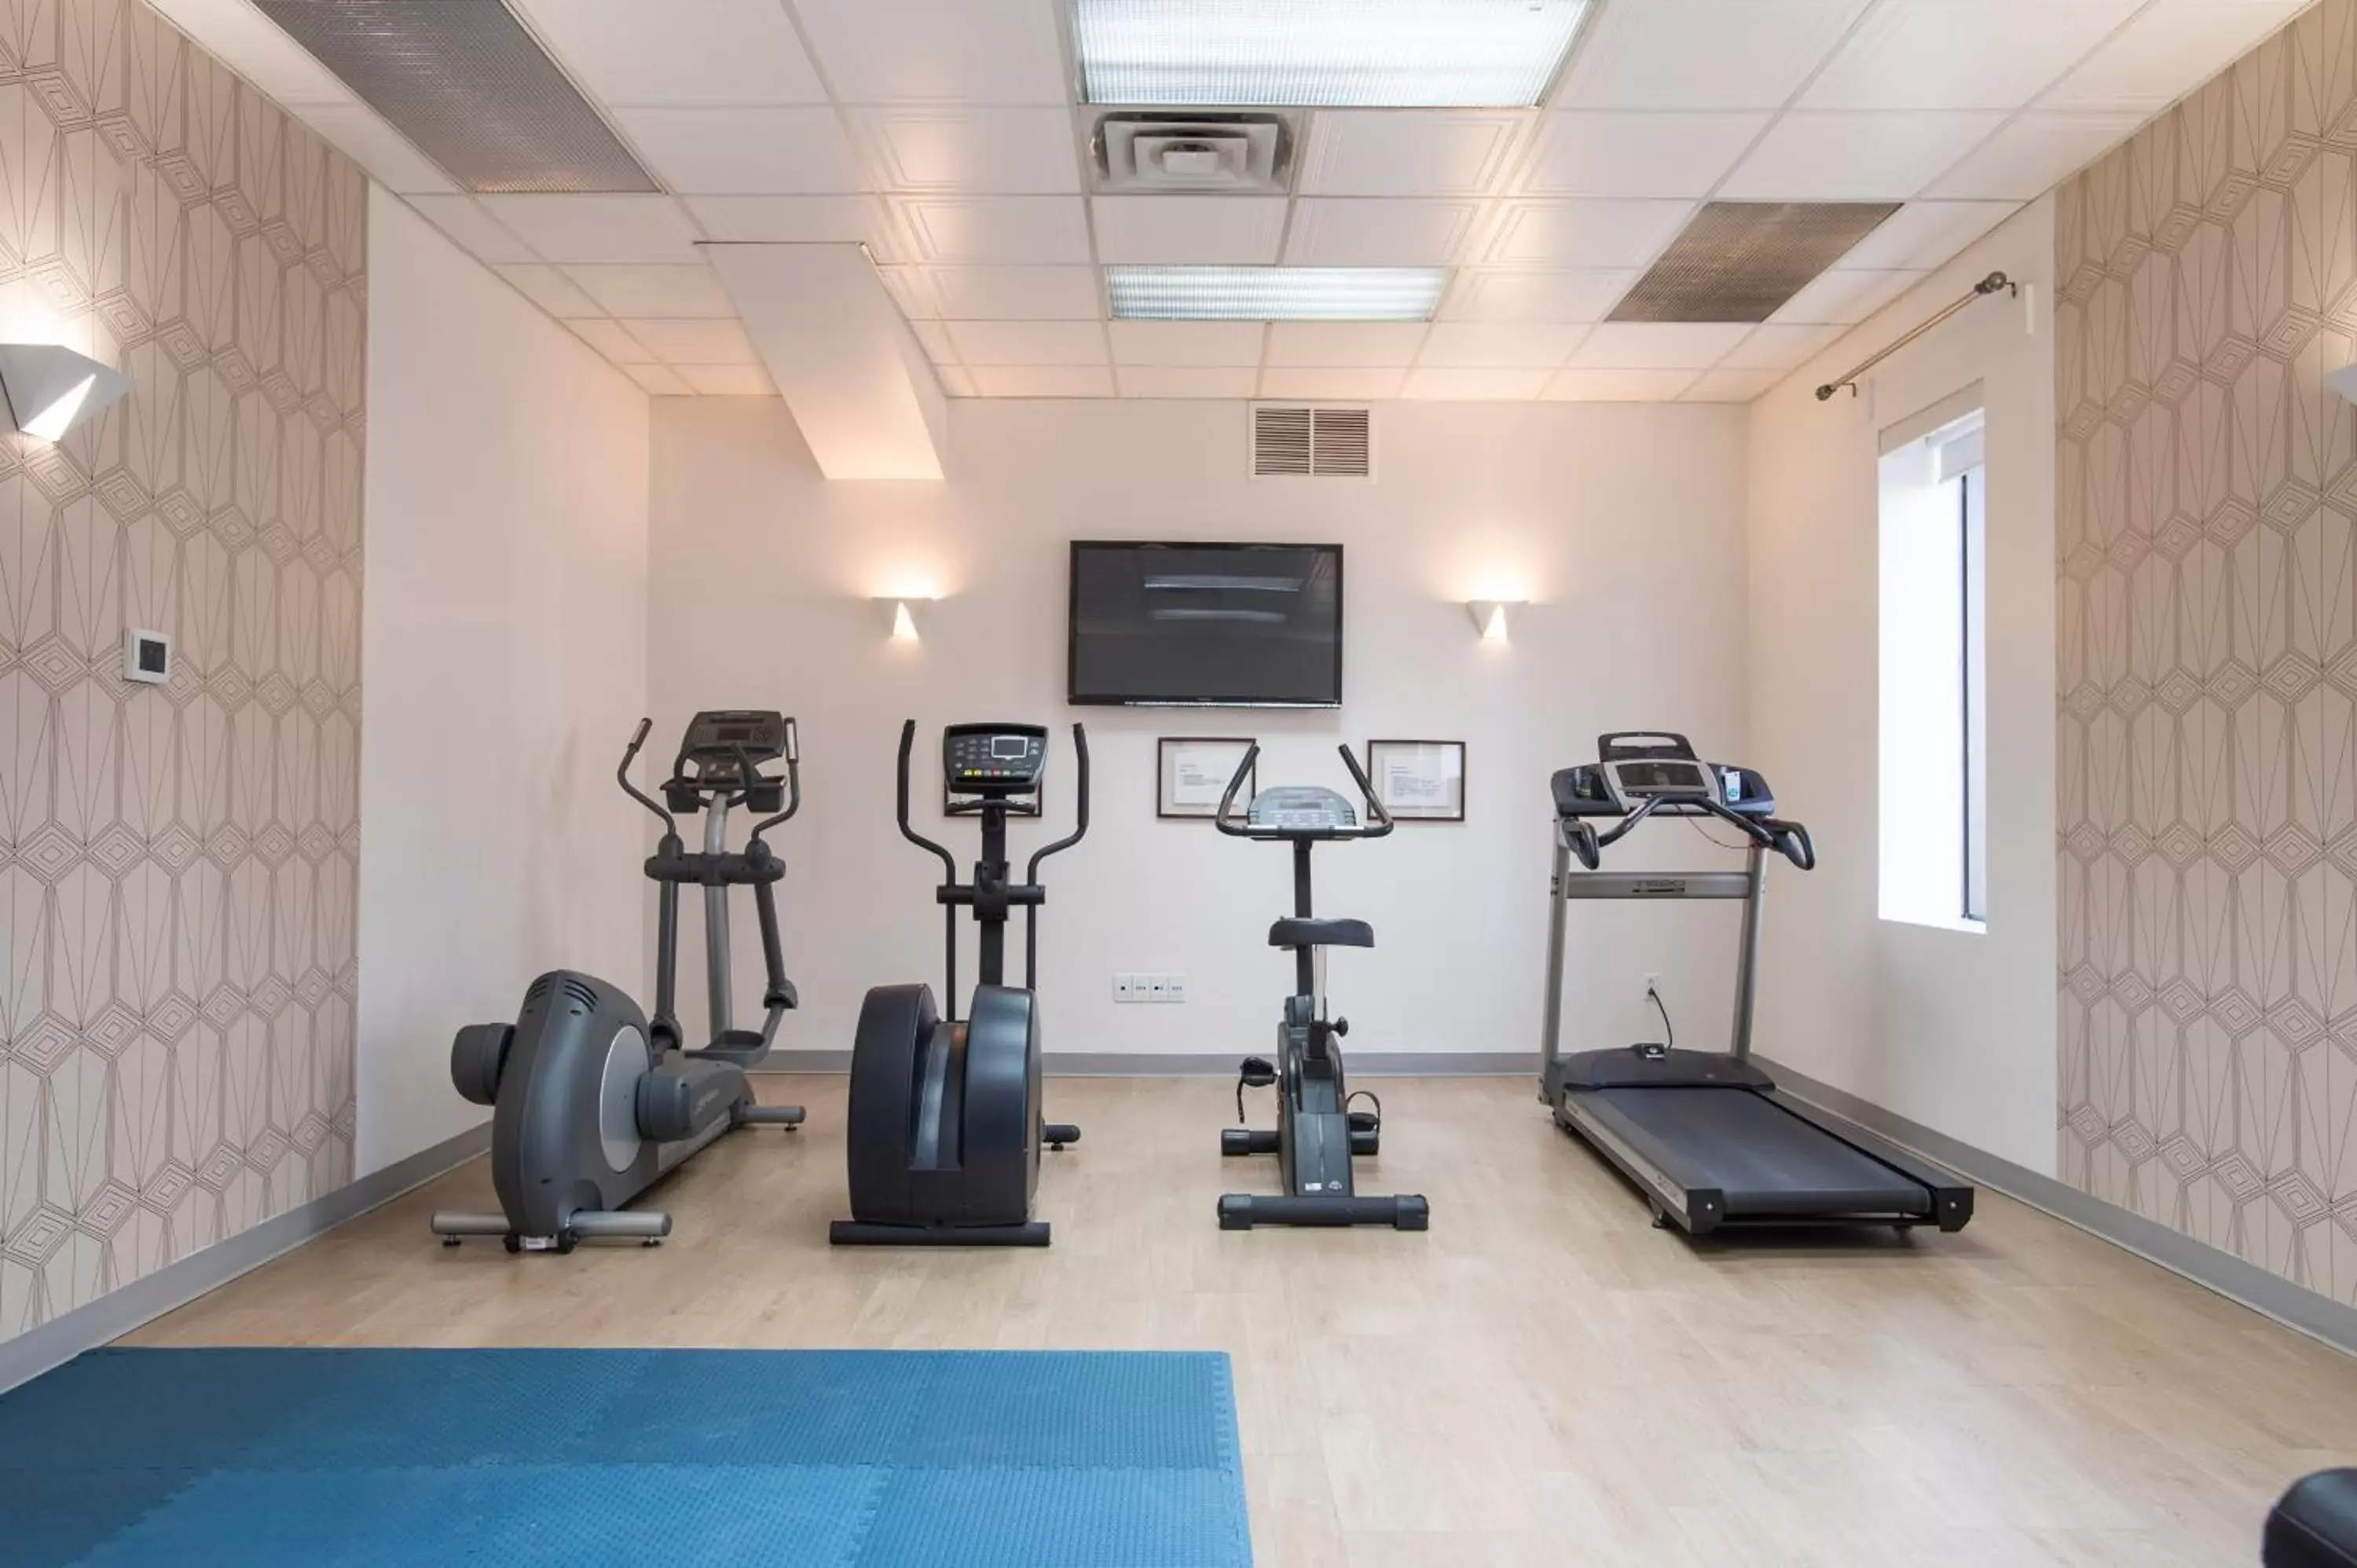 Fitness centre/facilities, Fitness Center/Facilities in Hôtel Albert par G5